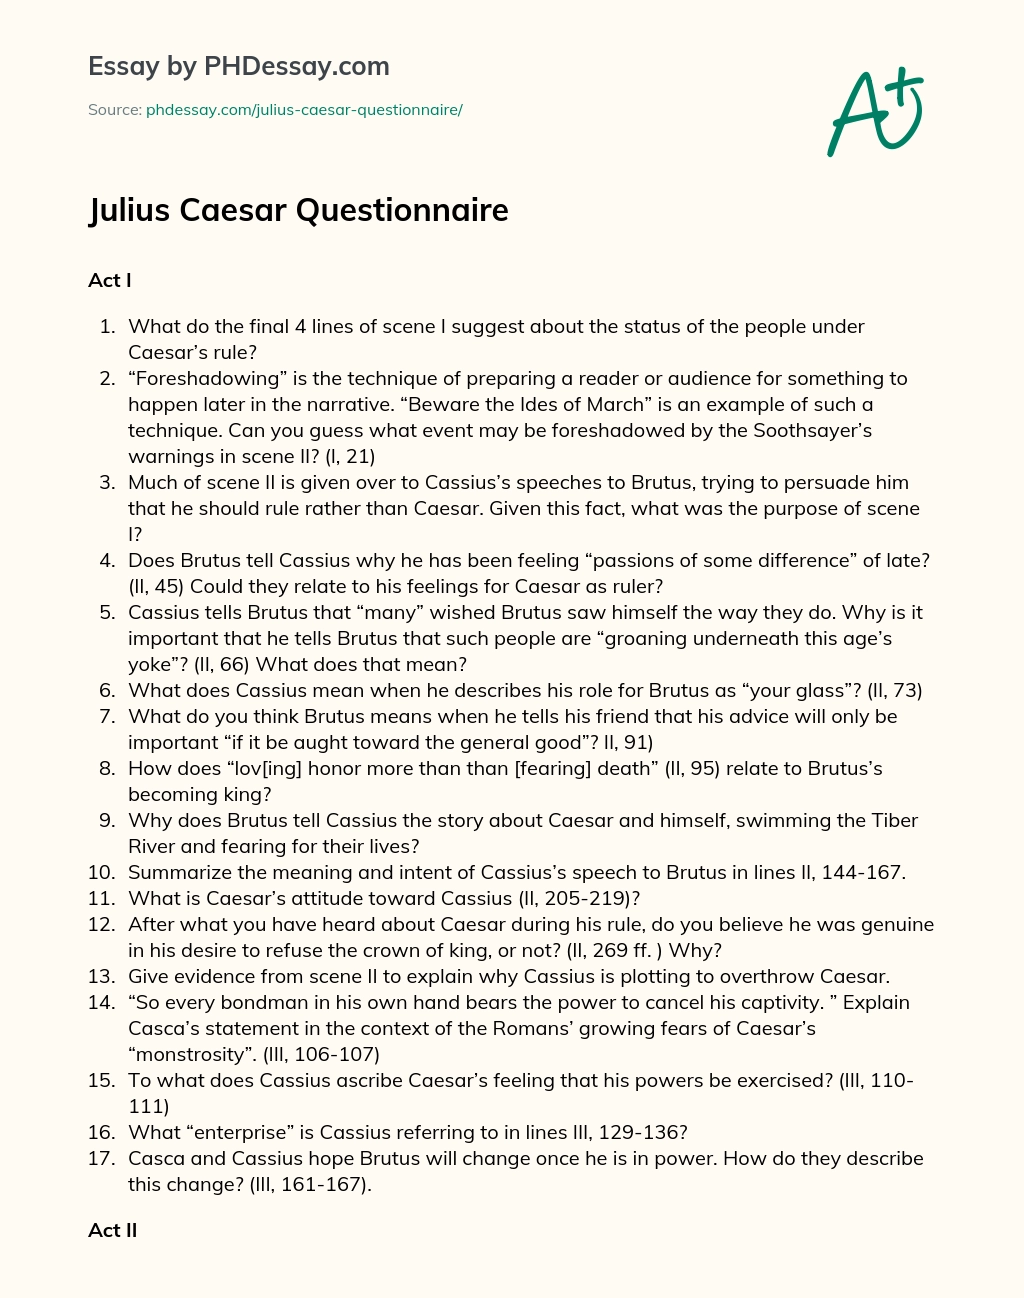 Julius Caesar Questionnaire essay